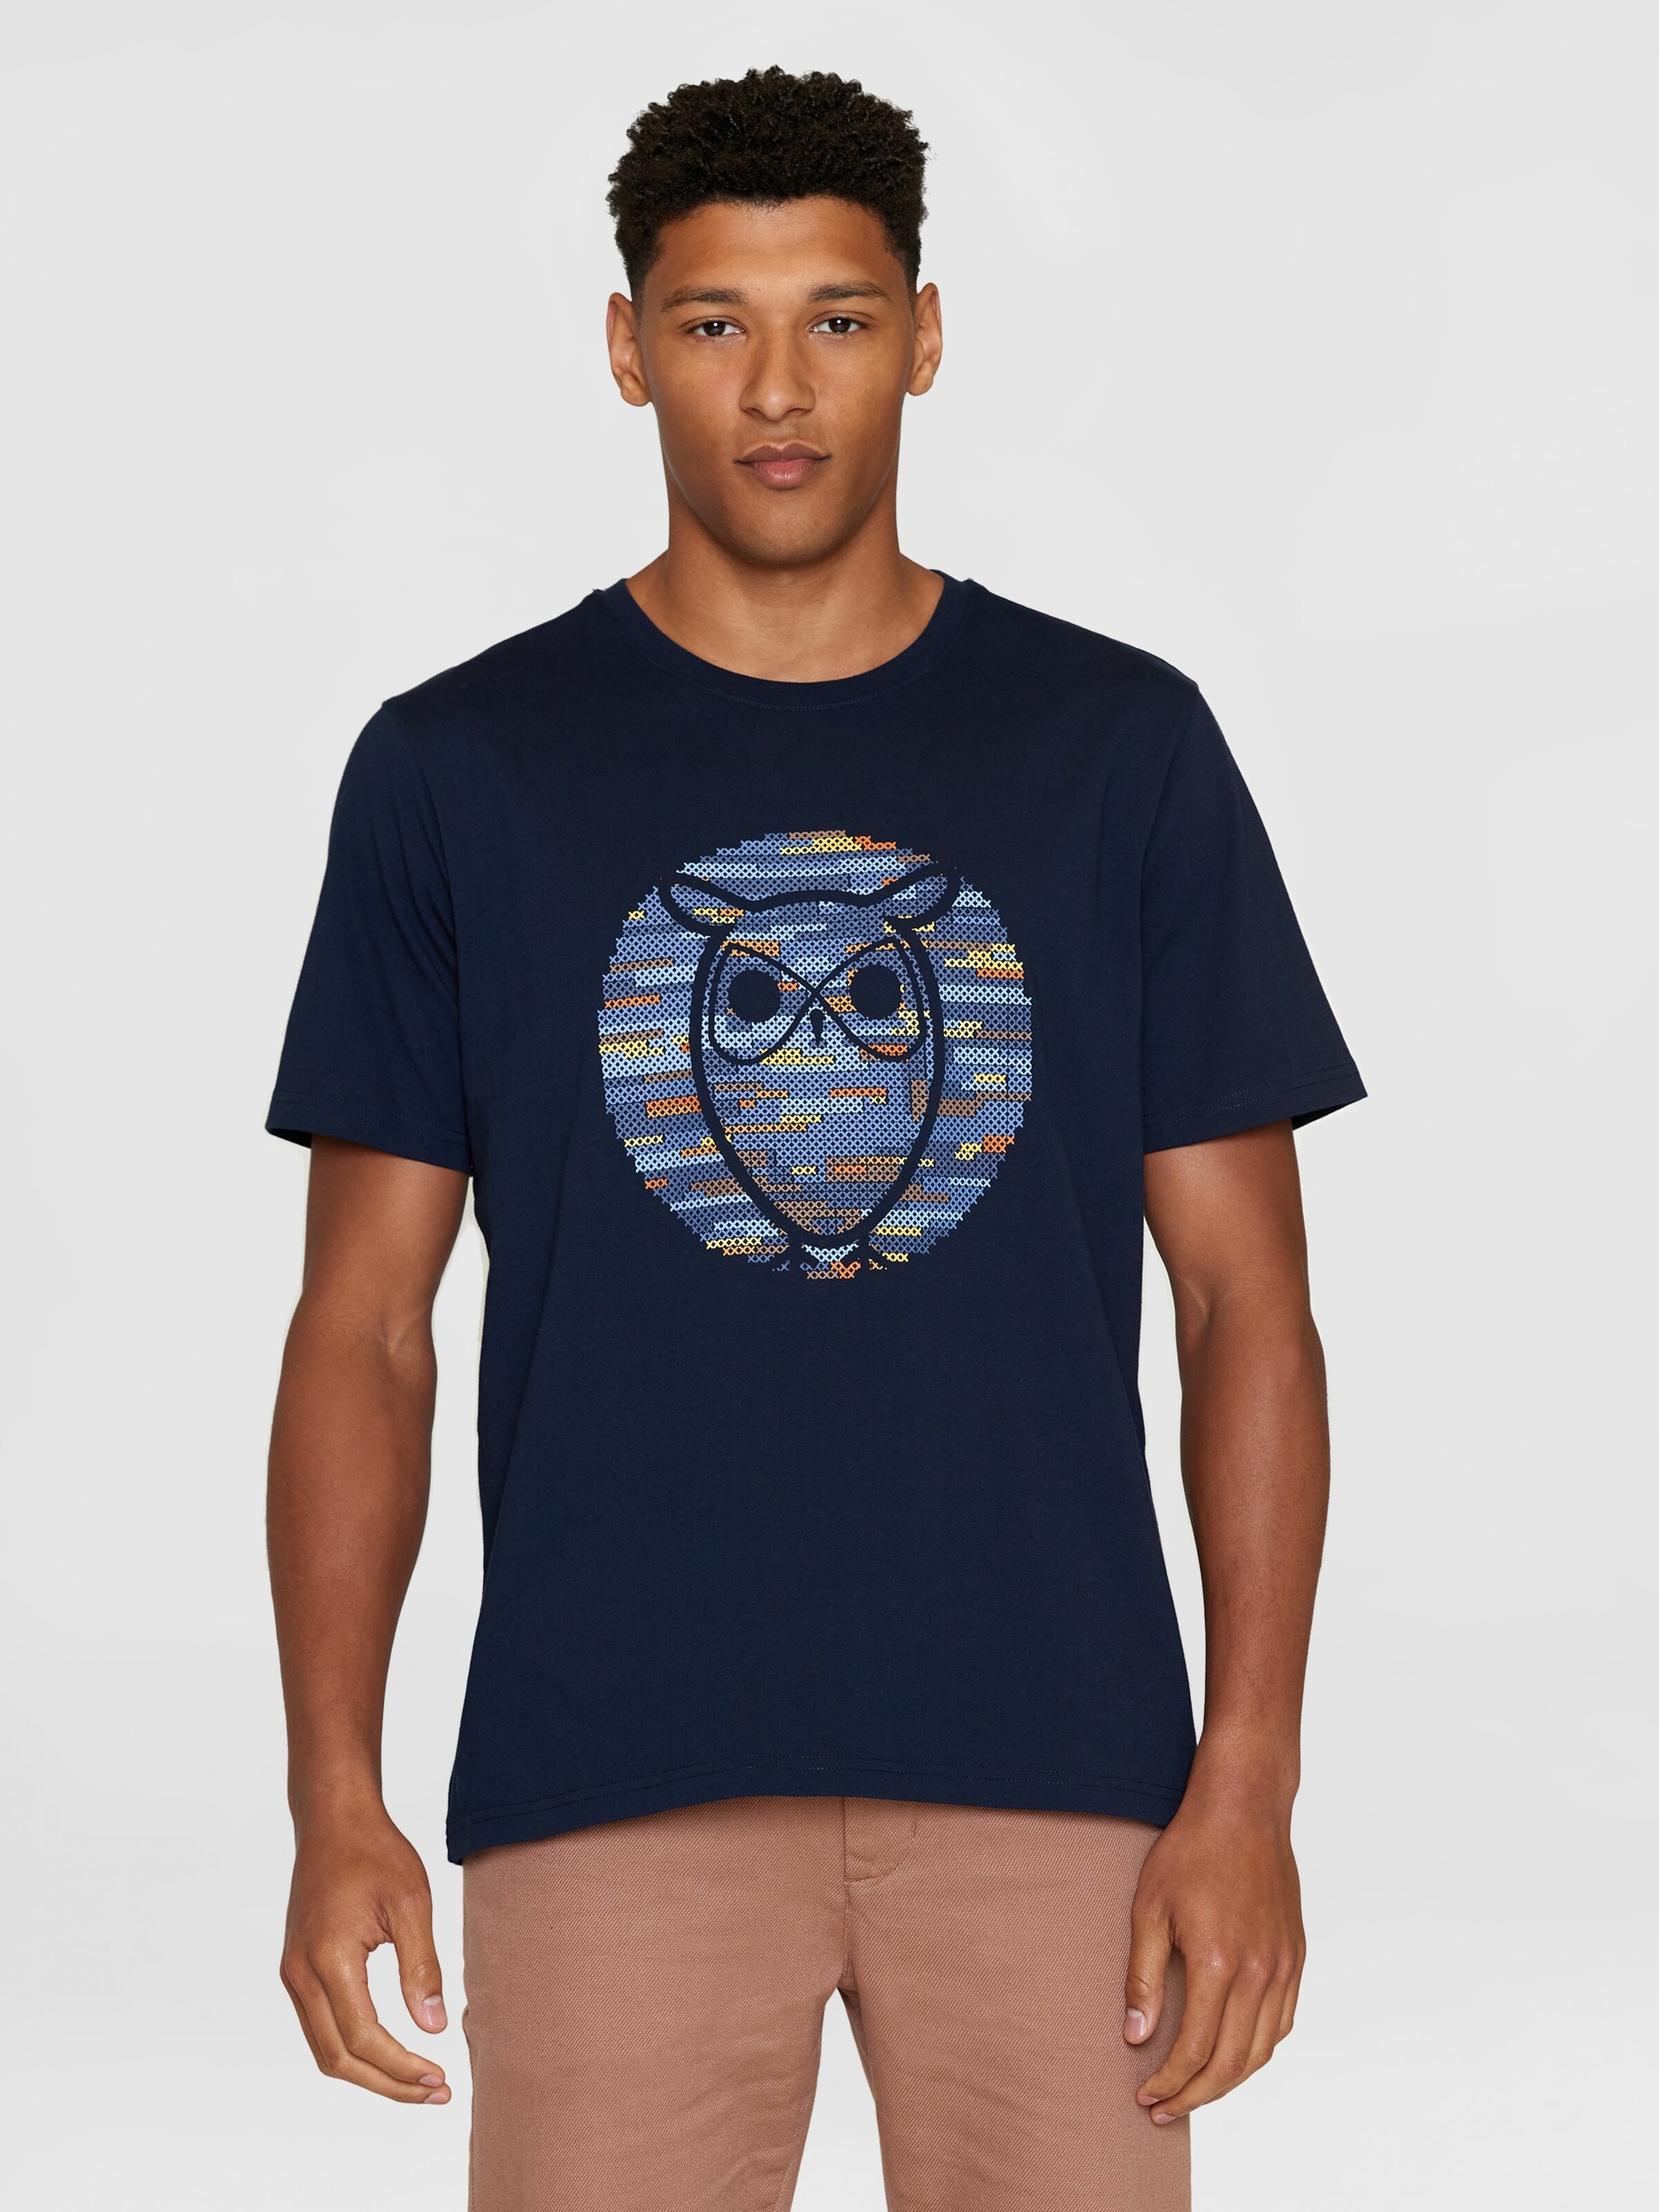 T-shirt Hibou cross stitch - bleu marine - coton biologique - Knowledge Cotton Apparel 01